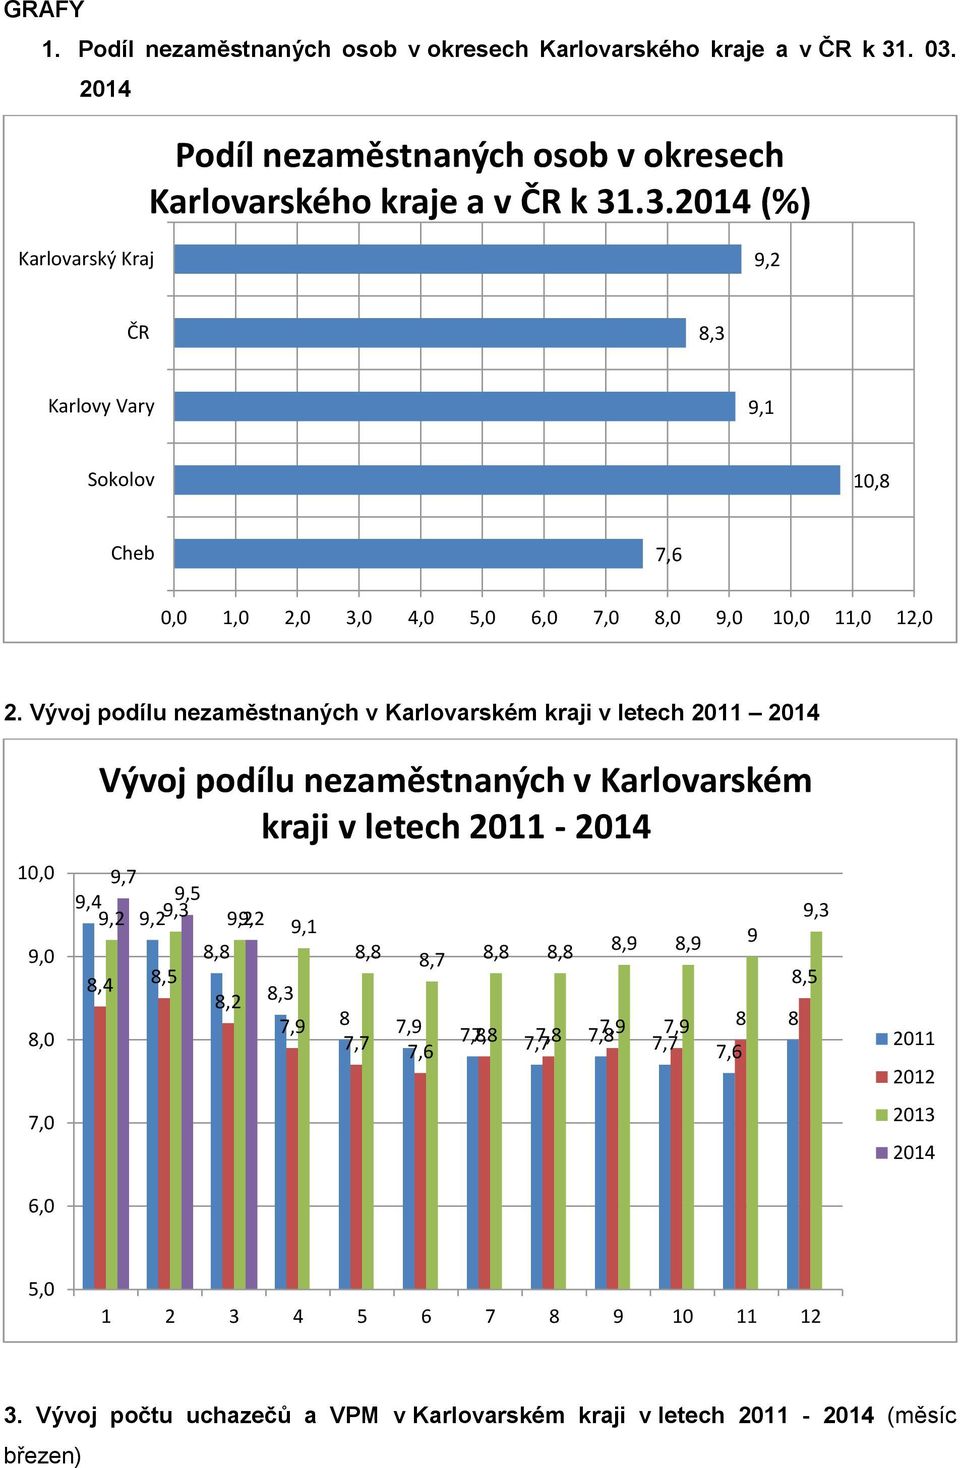 Vývoj podílu nezaměstnaných v Karlovarském kraji v letech 2011 2014 10,0 9,0 8,0 7,0 6,0 Vývoj podílu nezaměstnaných v Karlovarském kraji v letech 2011-2014 9,7 9,4 9,5 9,2 9,29,3